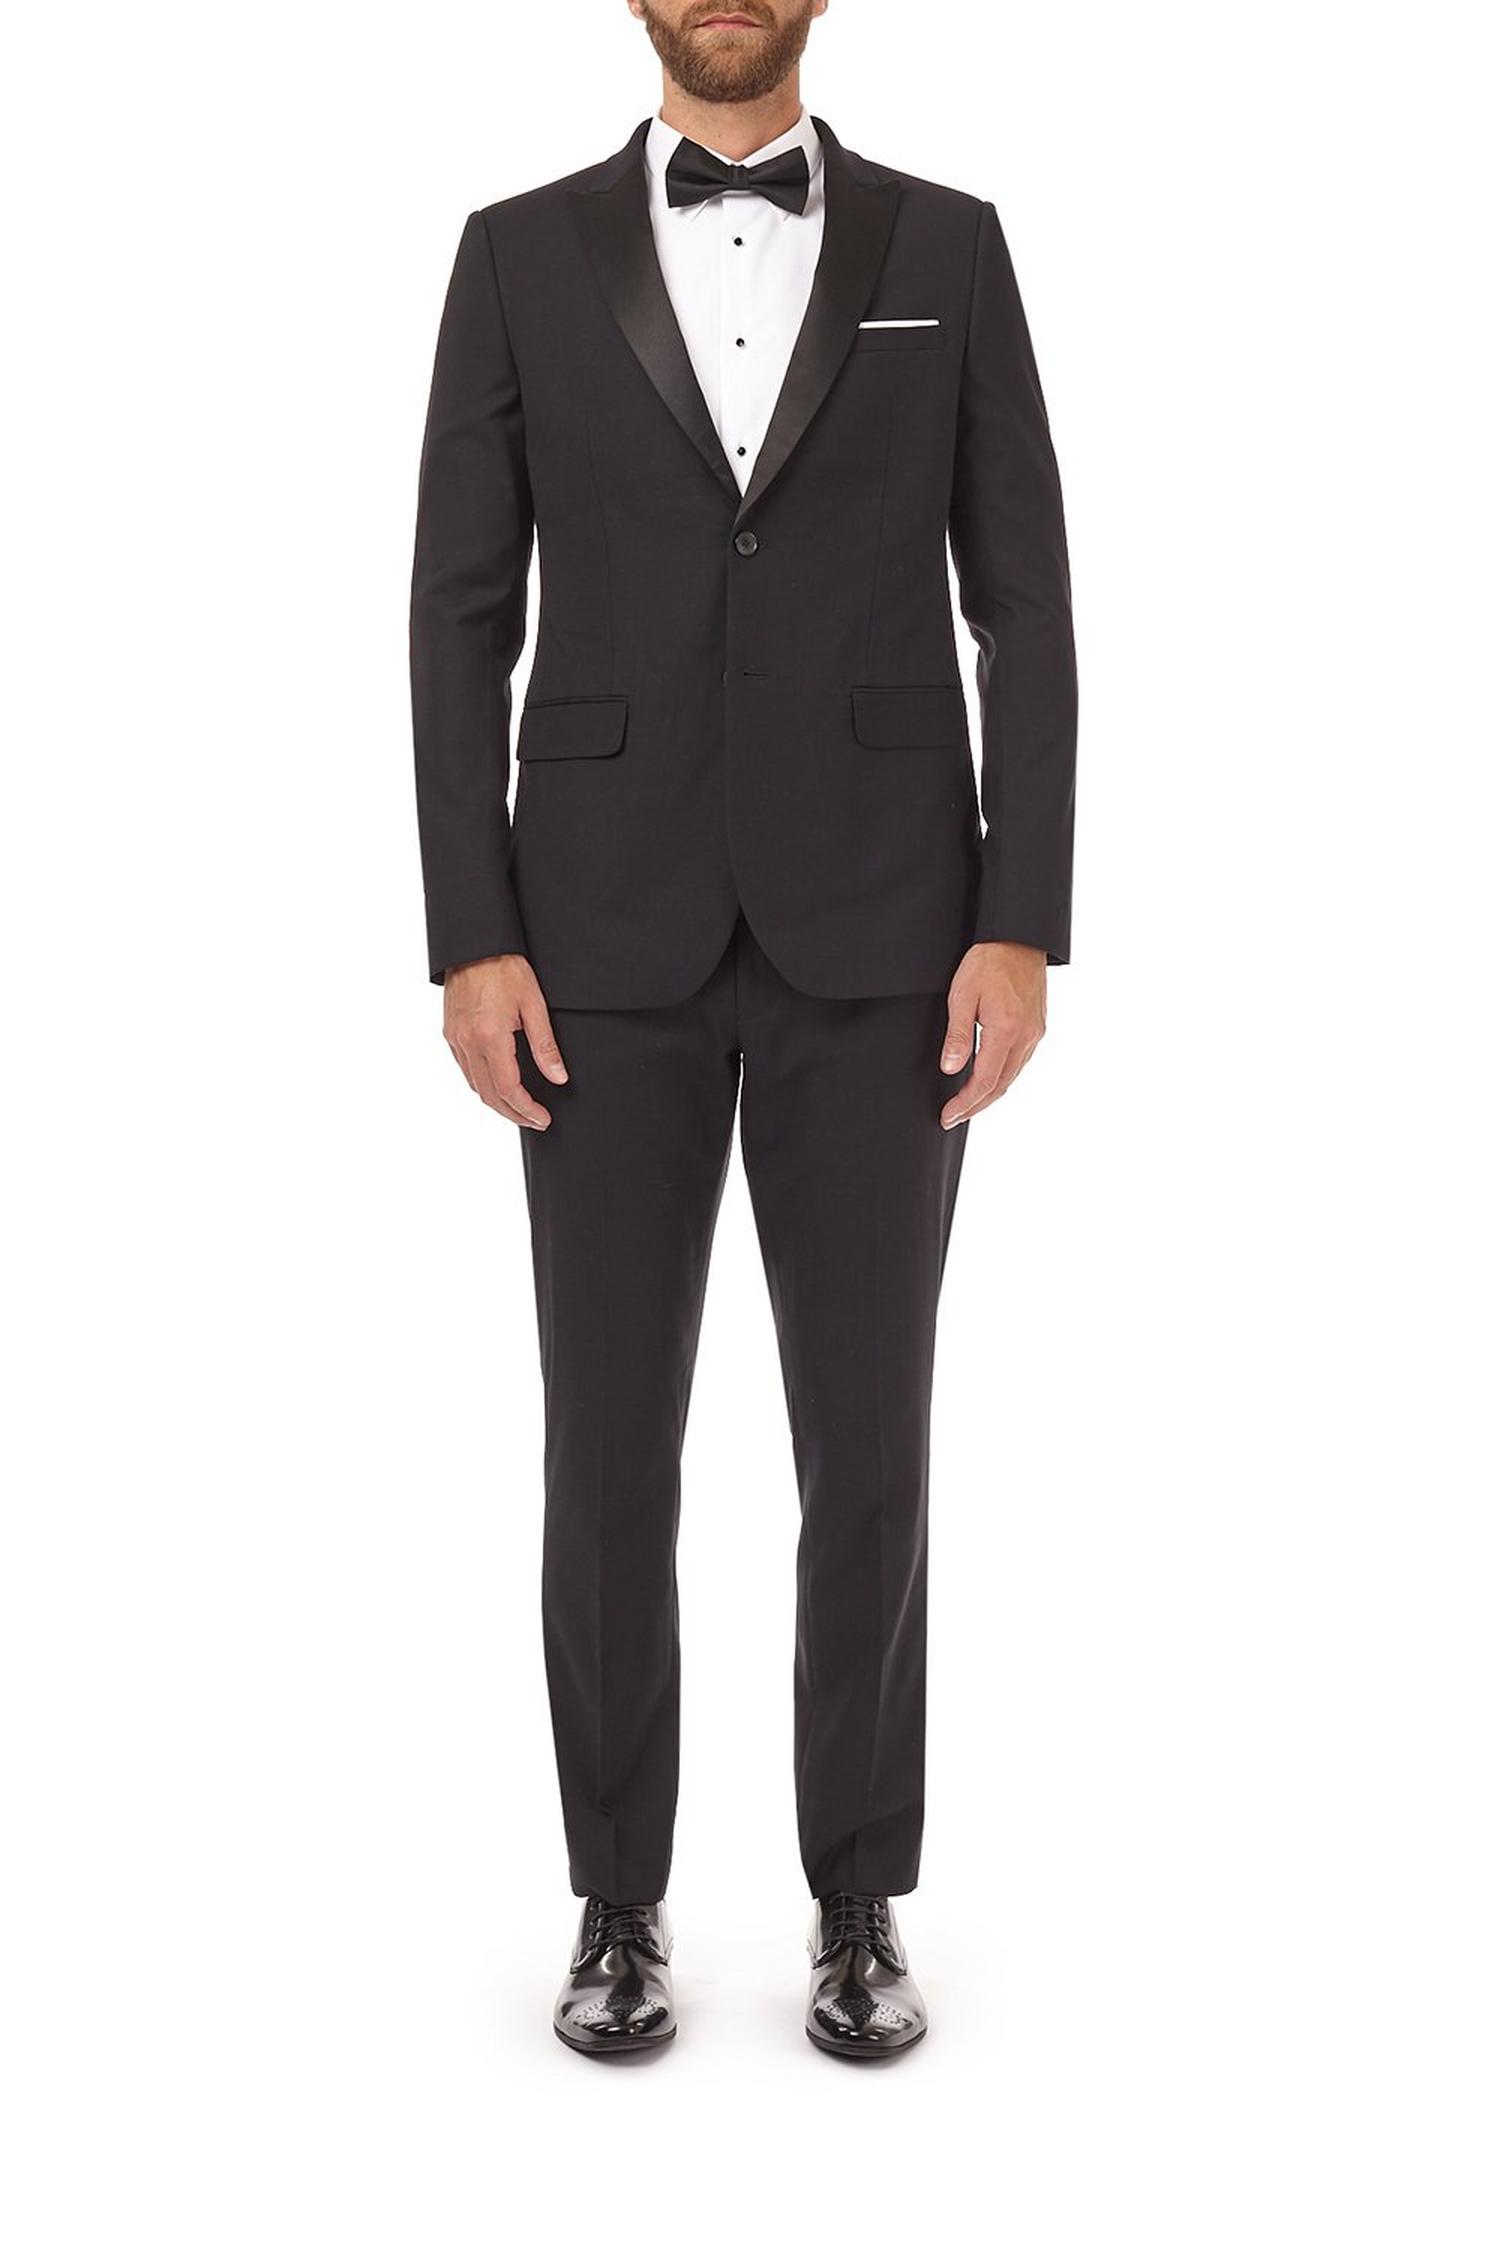 Black stretch tuxedo skinny fit suit jacket | Burton UK